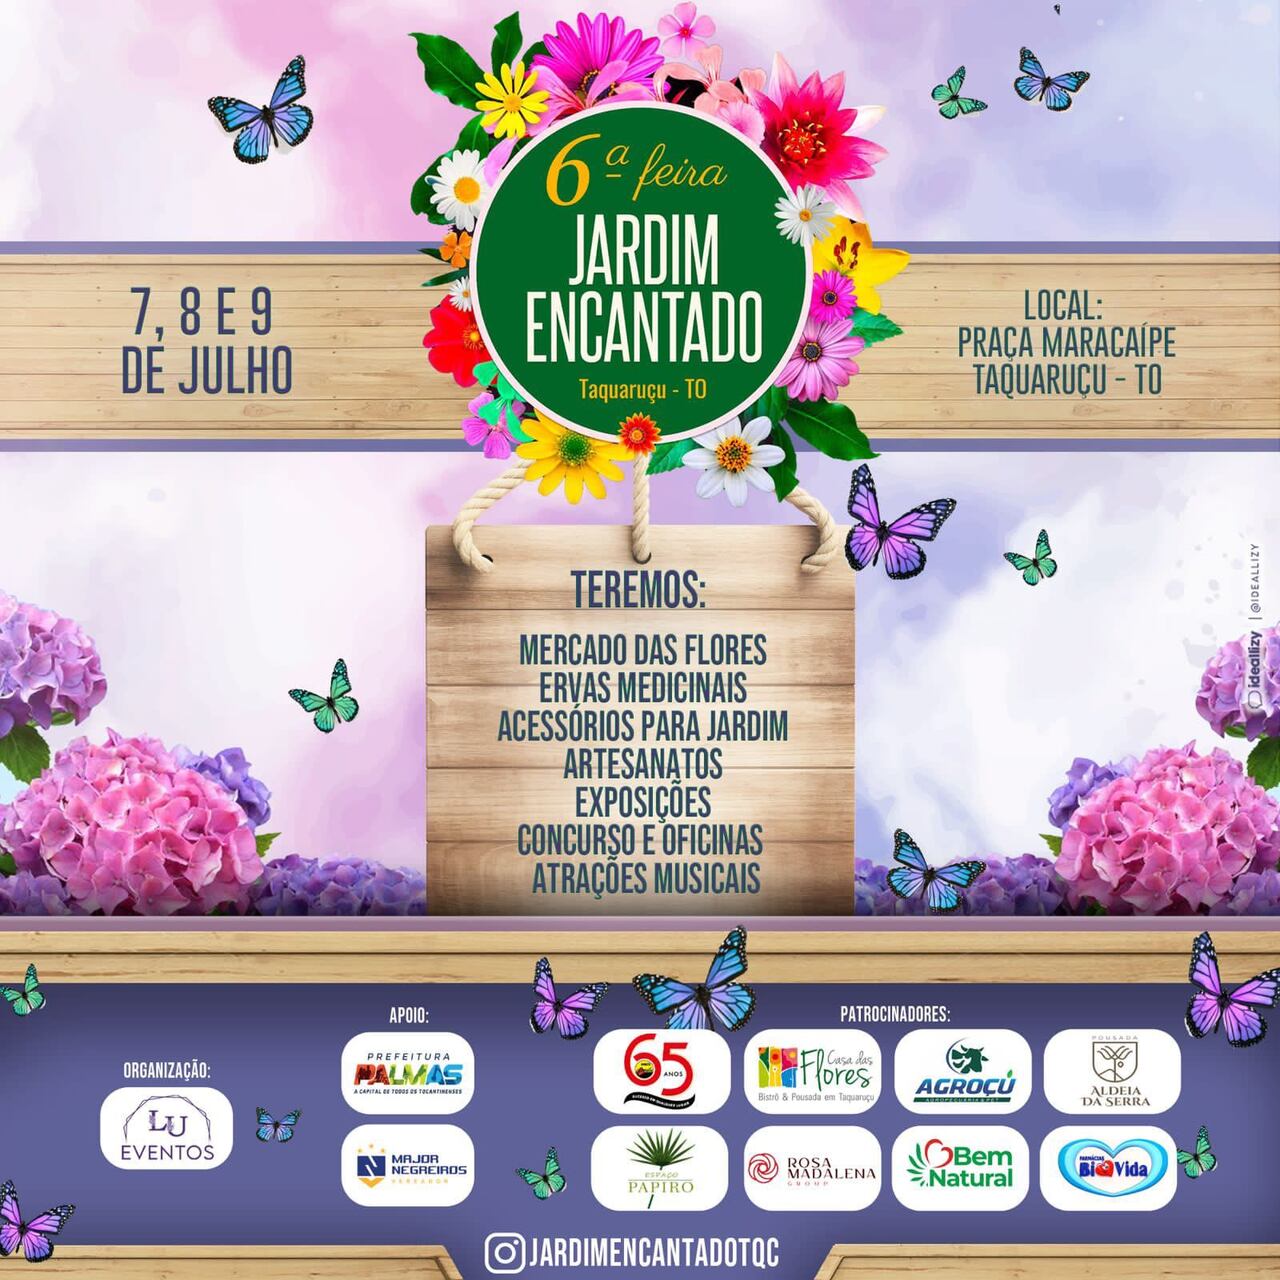 Distrito de Taquaruçu se prepara para receber a 6ª edição da Feira Jardim Encantado; saiba detalhes